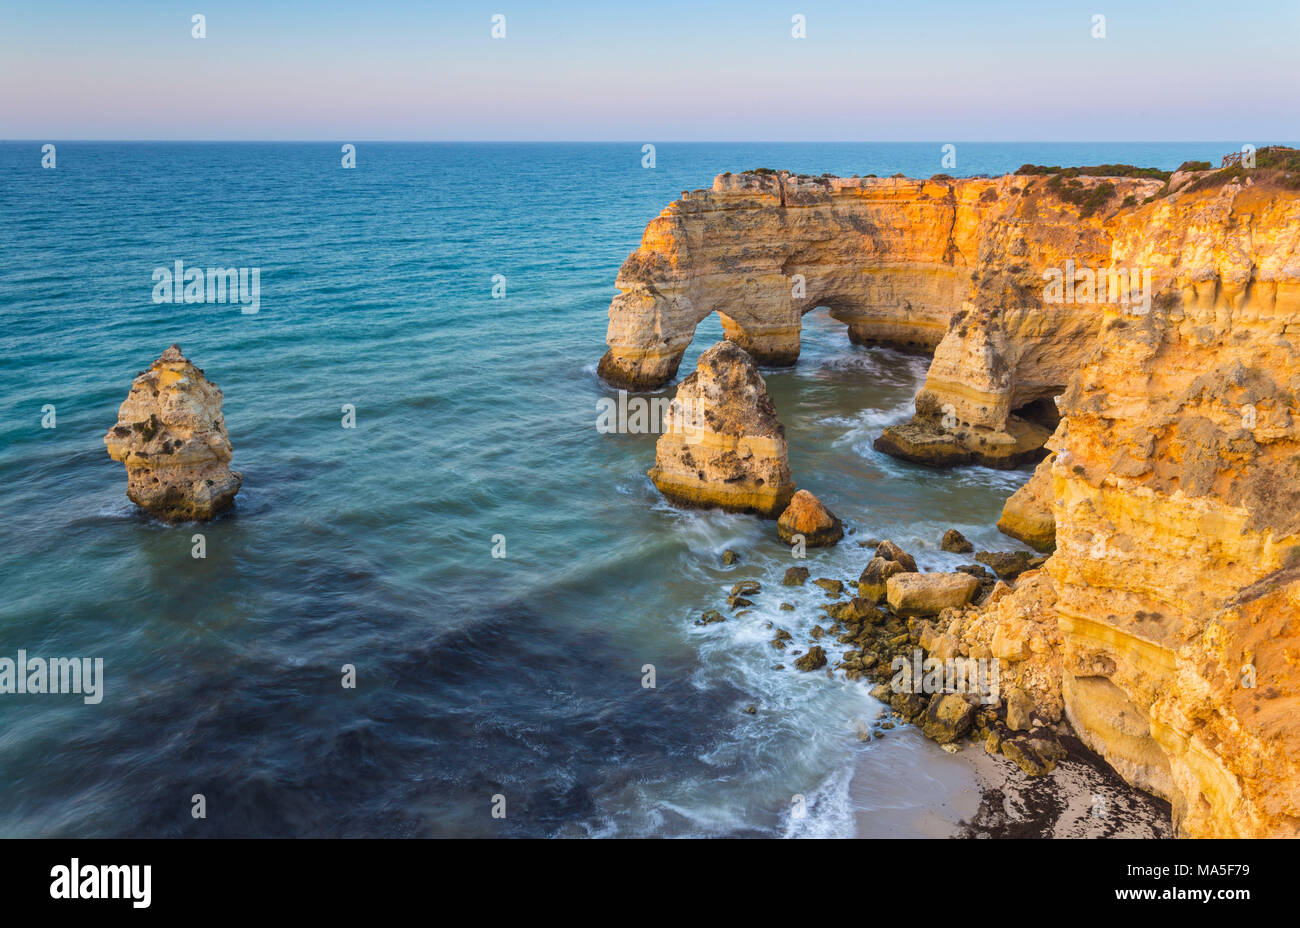 Spiaggia di Algarve, Portogallo, Europa occidentale. Foto Stock